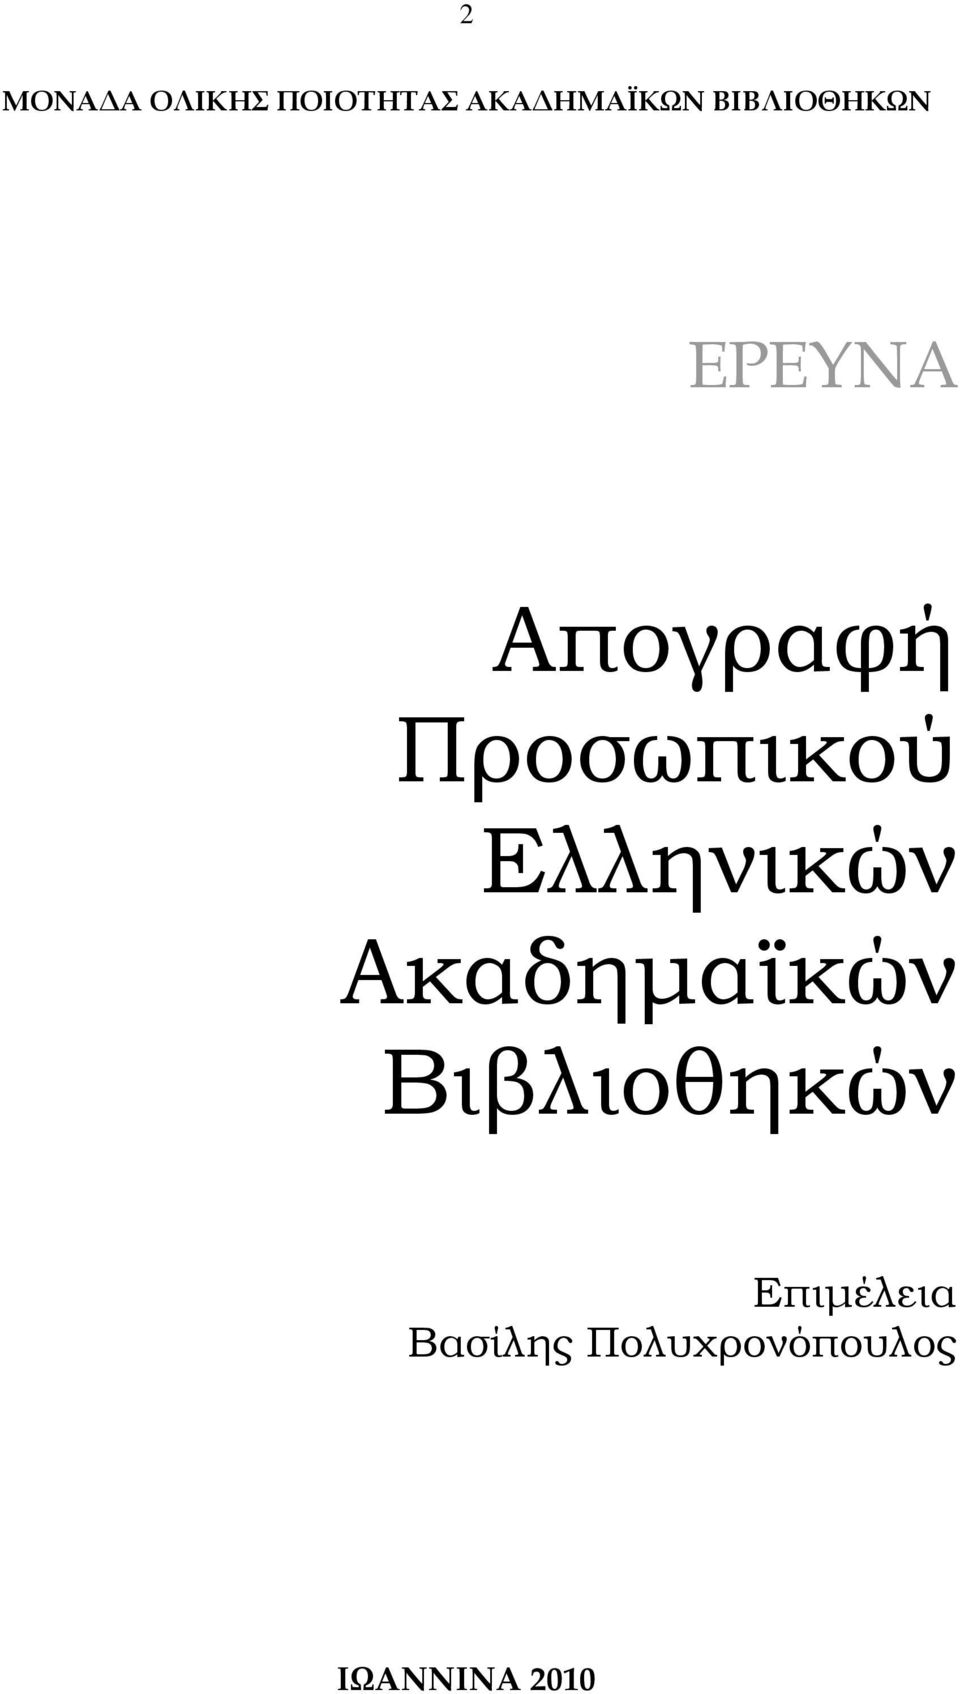 Ελληνικών Ακαδηµαϊκών Βιβλιοθηκών